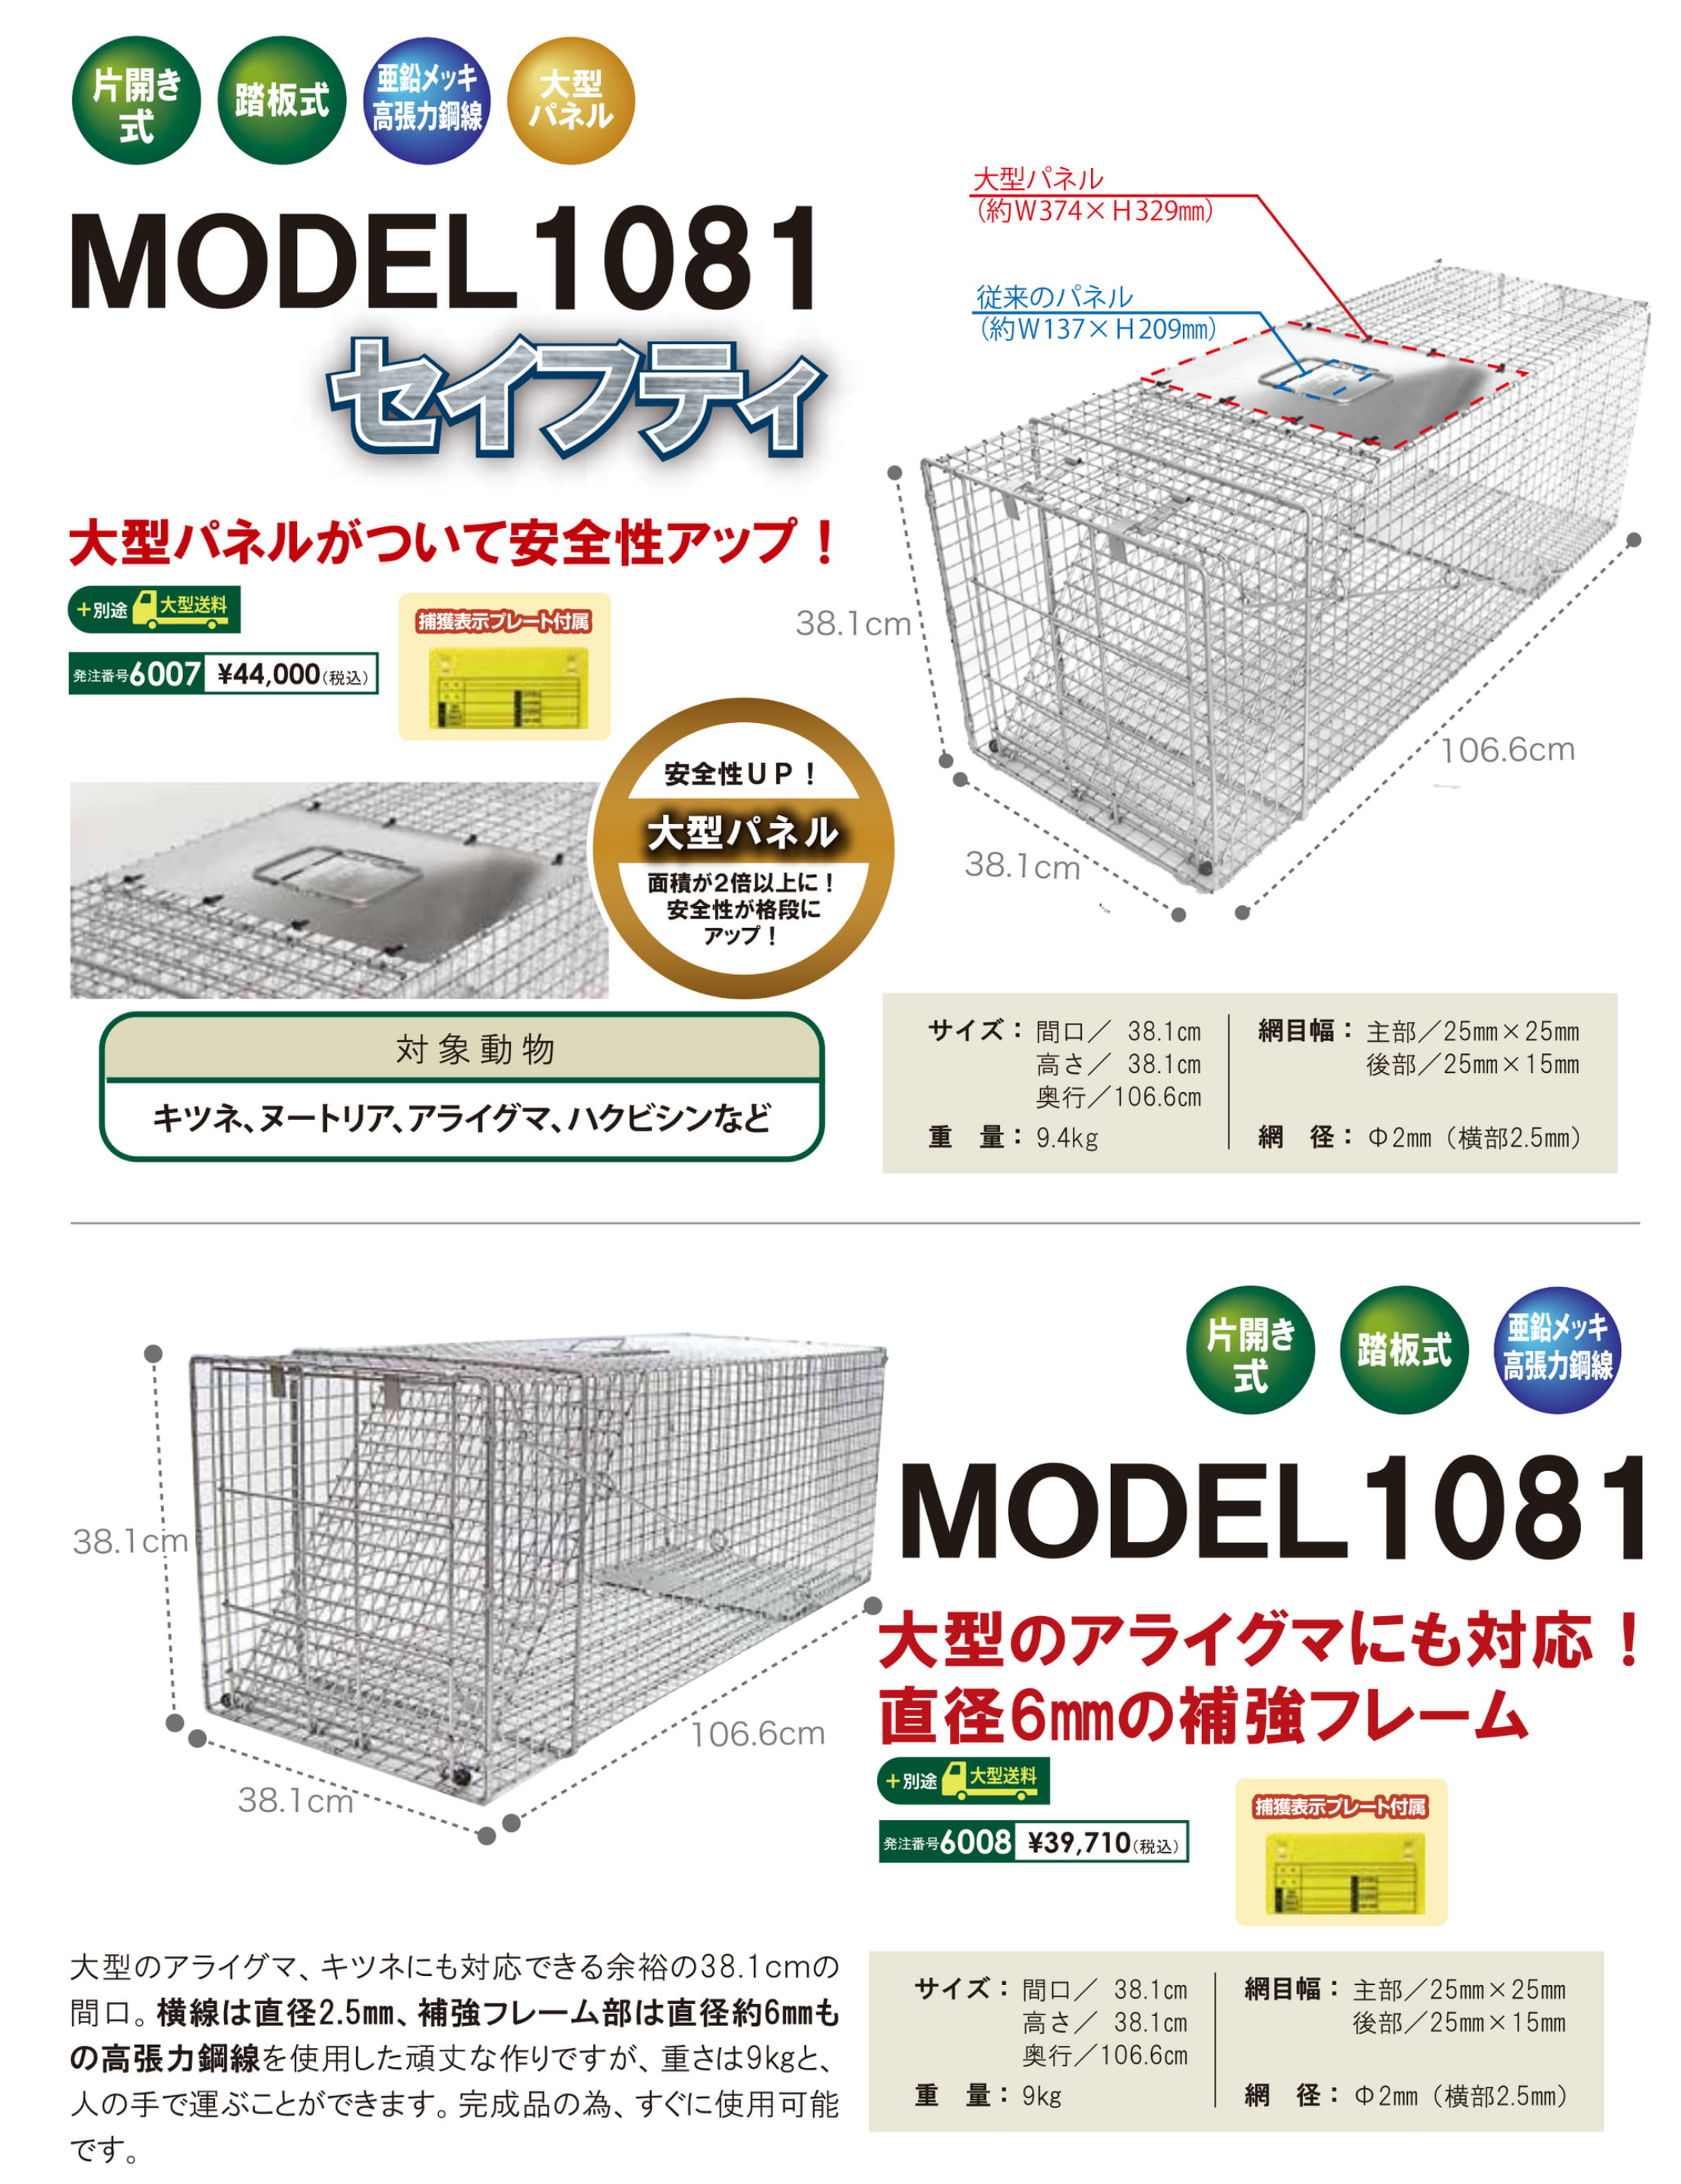 MODEL1081 、MODEL1081セイフティ